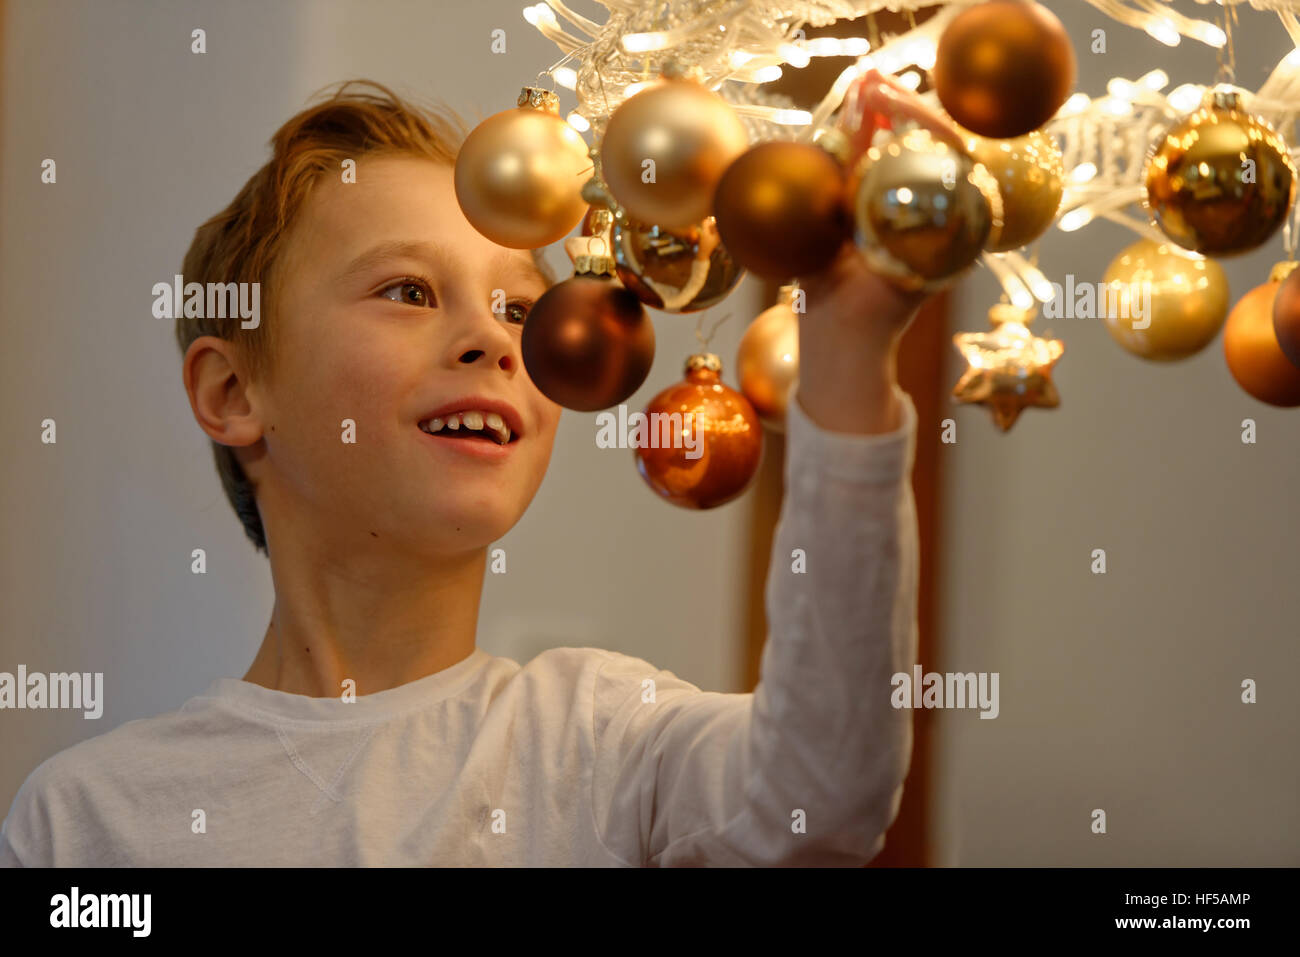 Kleiner Junge mit Beleuchtung und Kranz, Weihnachtsschmuck, Vorfreude auf Weihnachten, Upper Bavaria, Bavaria, Germany Stockfoto